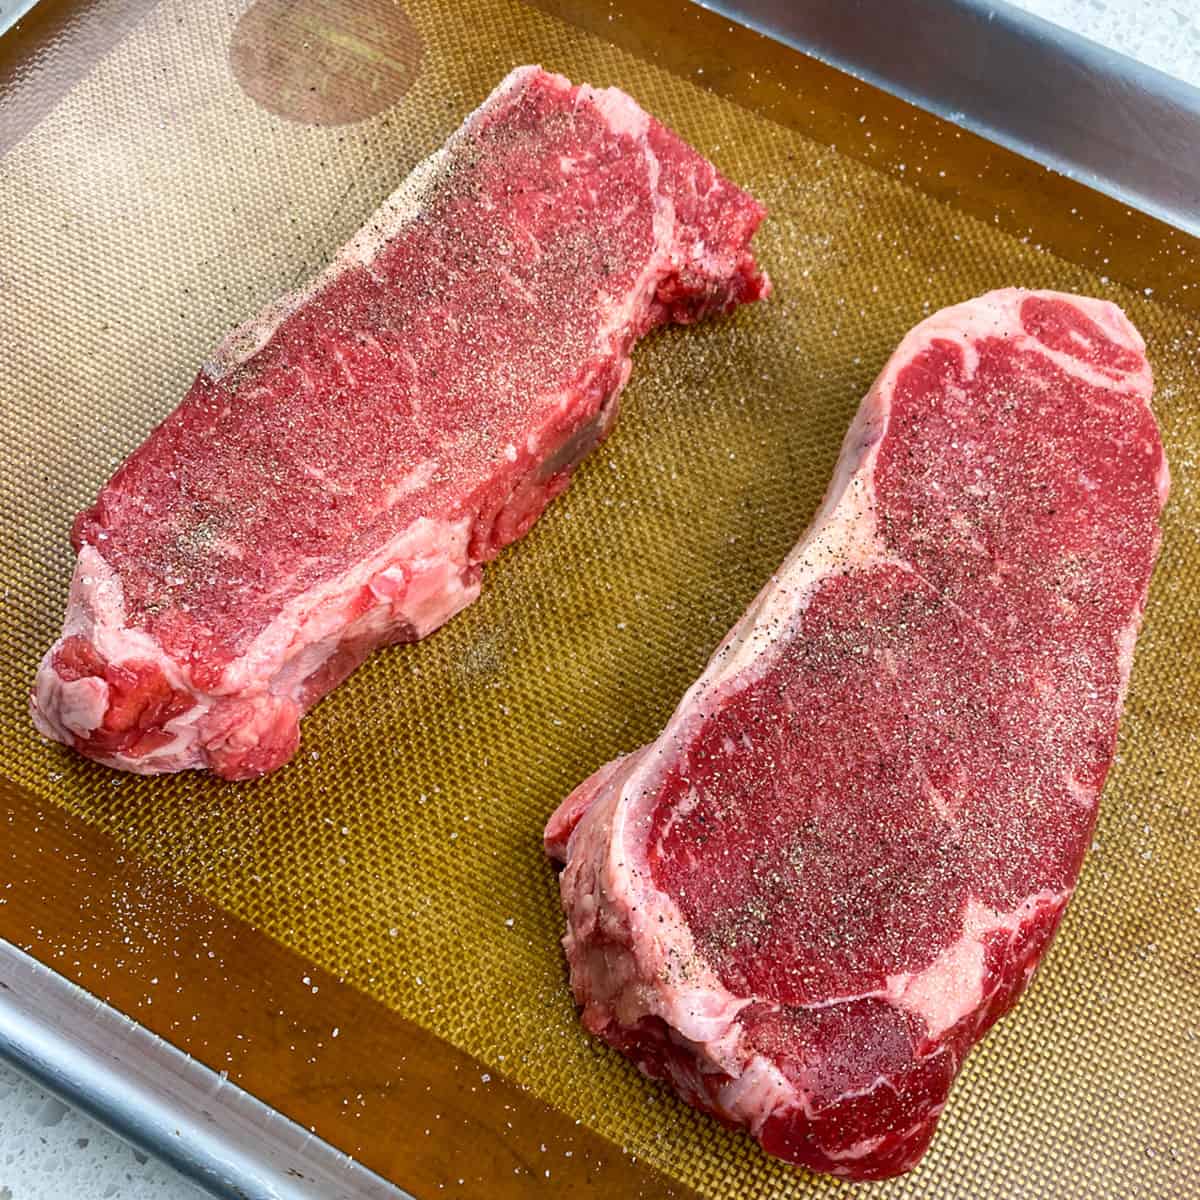 two uncooked seasoned new york strip steaks on baking sheet